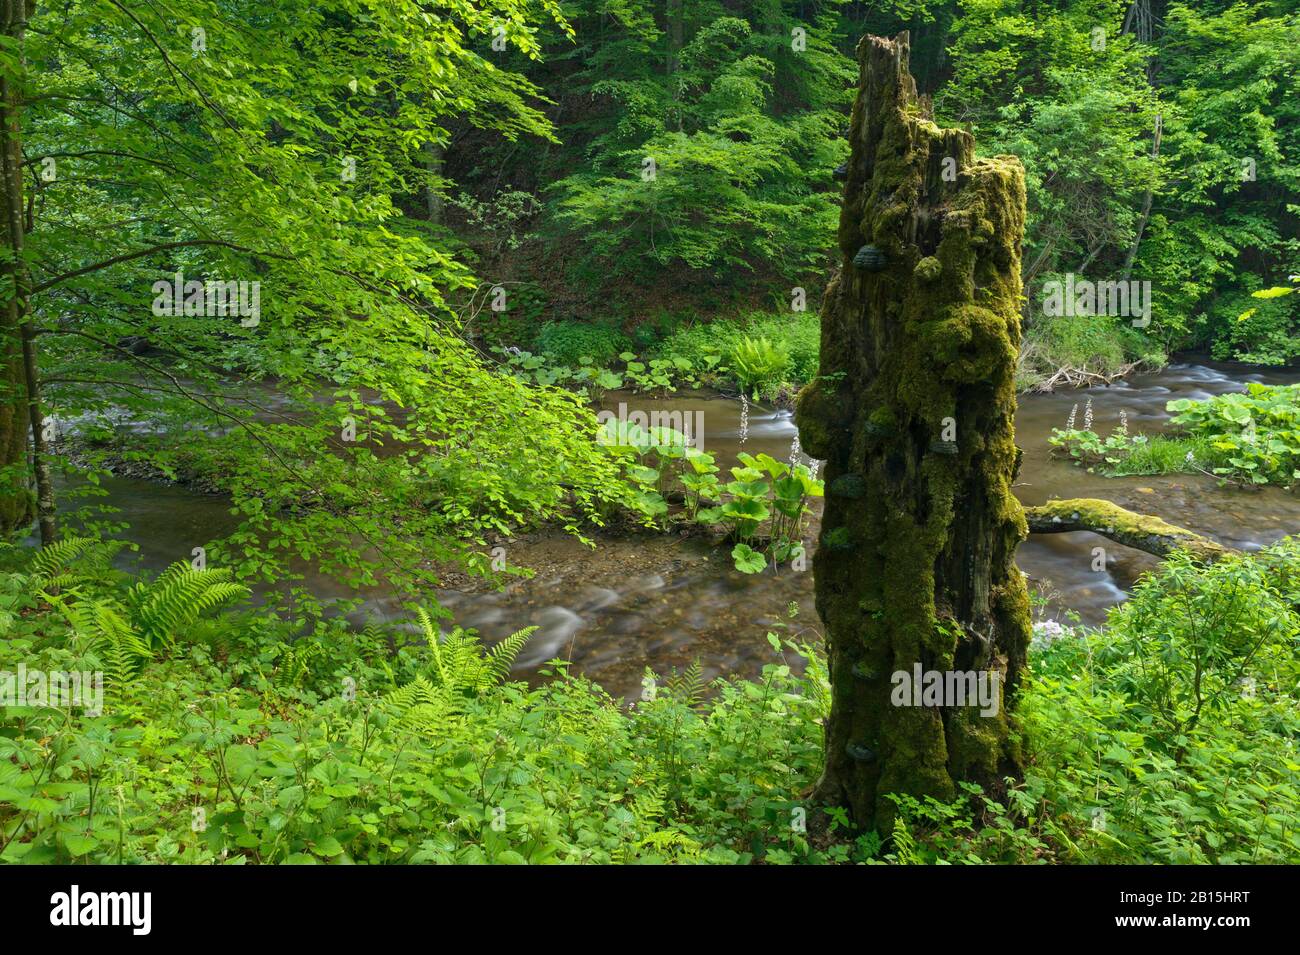 Parco Nazionale Semenic / Romania: Patrimonio mondiale dell'UNESCO foresta primaria di faggio protetta 'Nera Springs'. Nel resto del parco il logging è onnipresente. Foto Stock